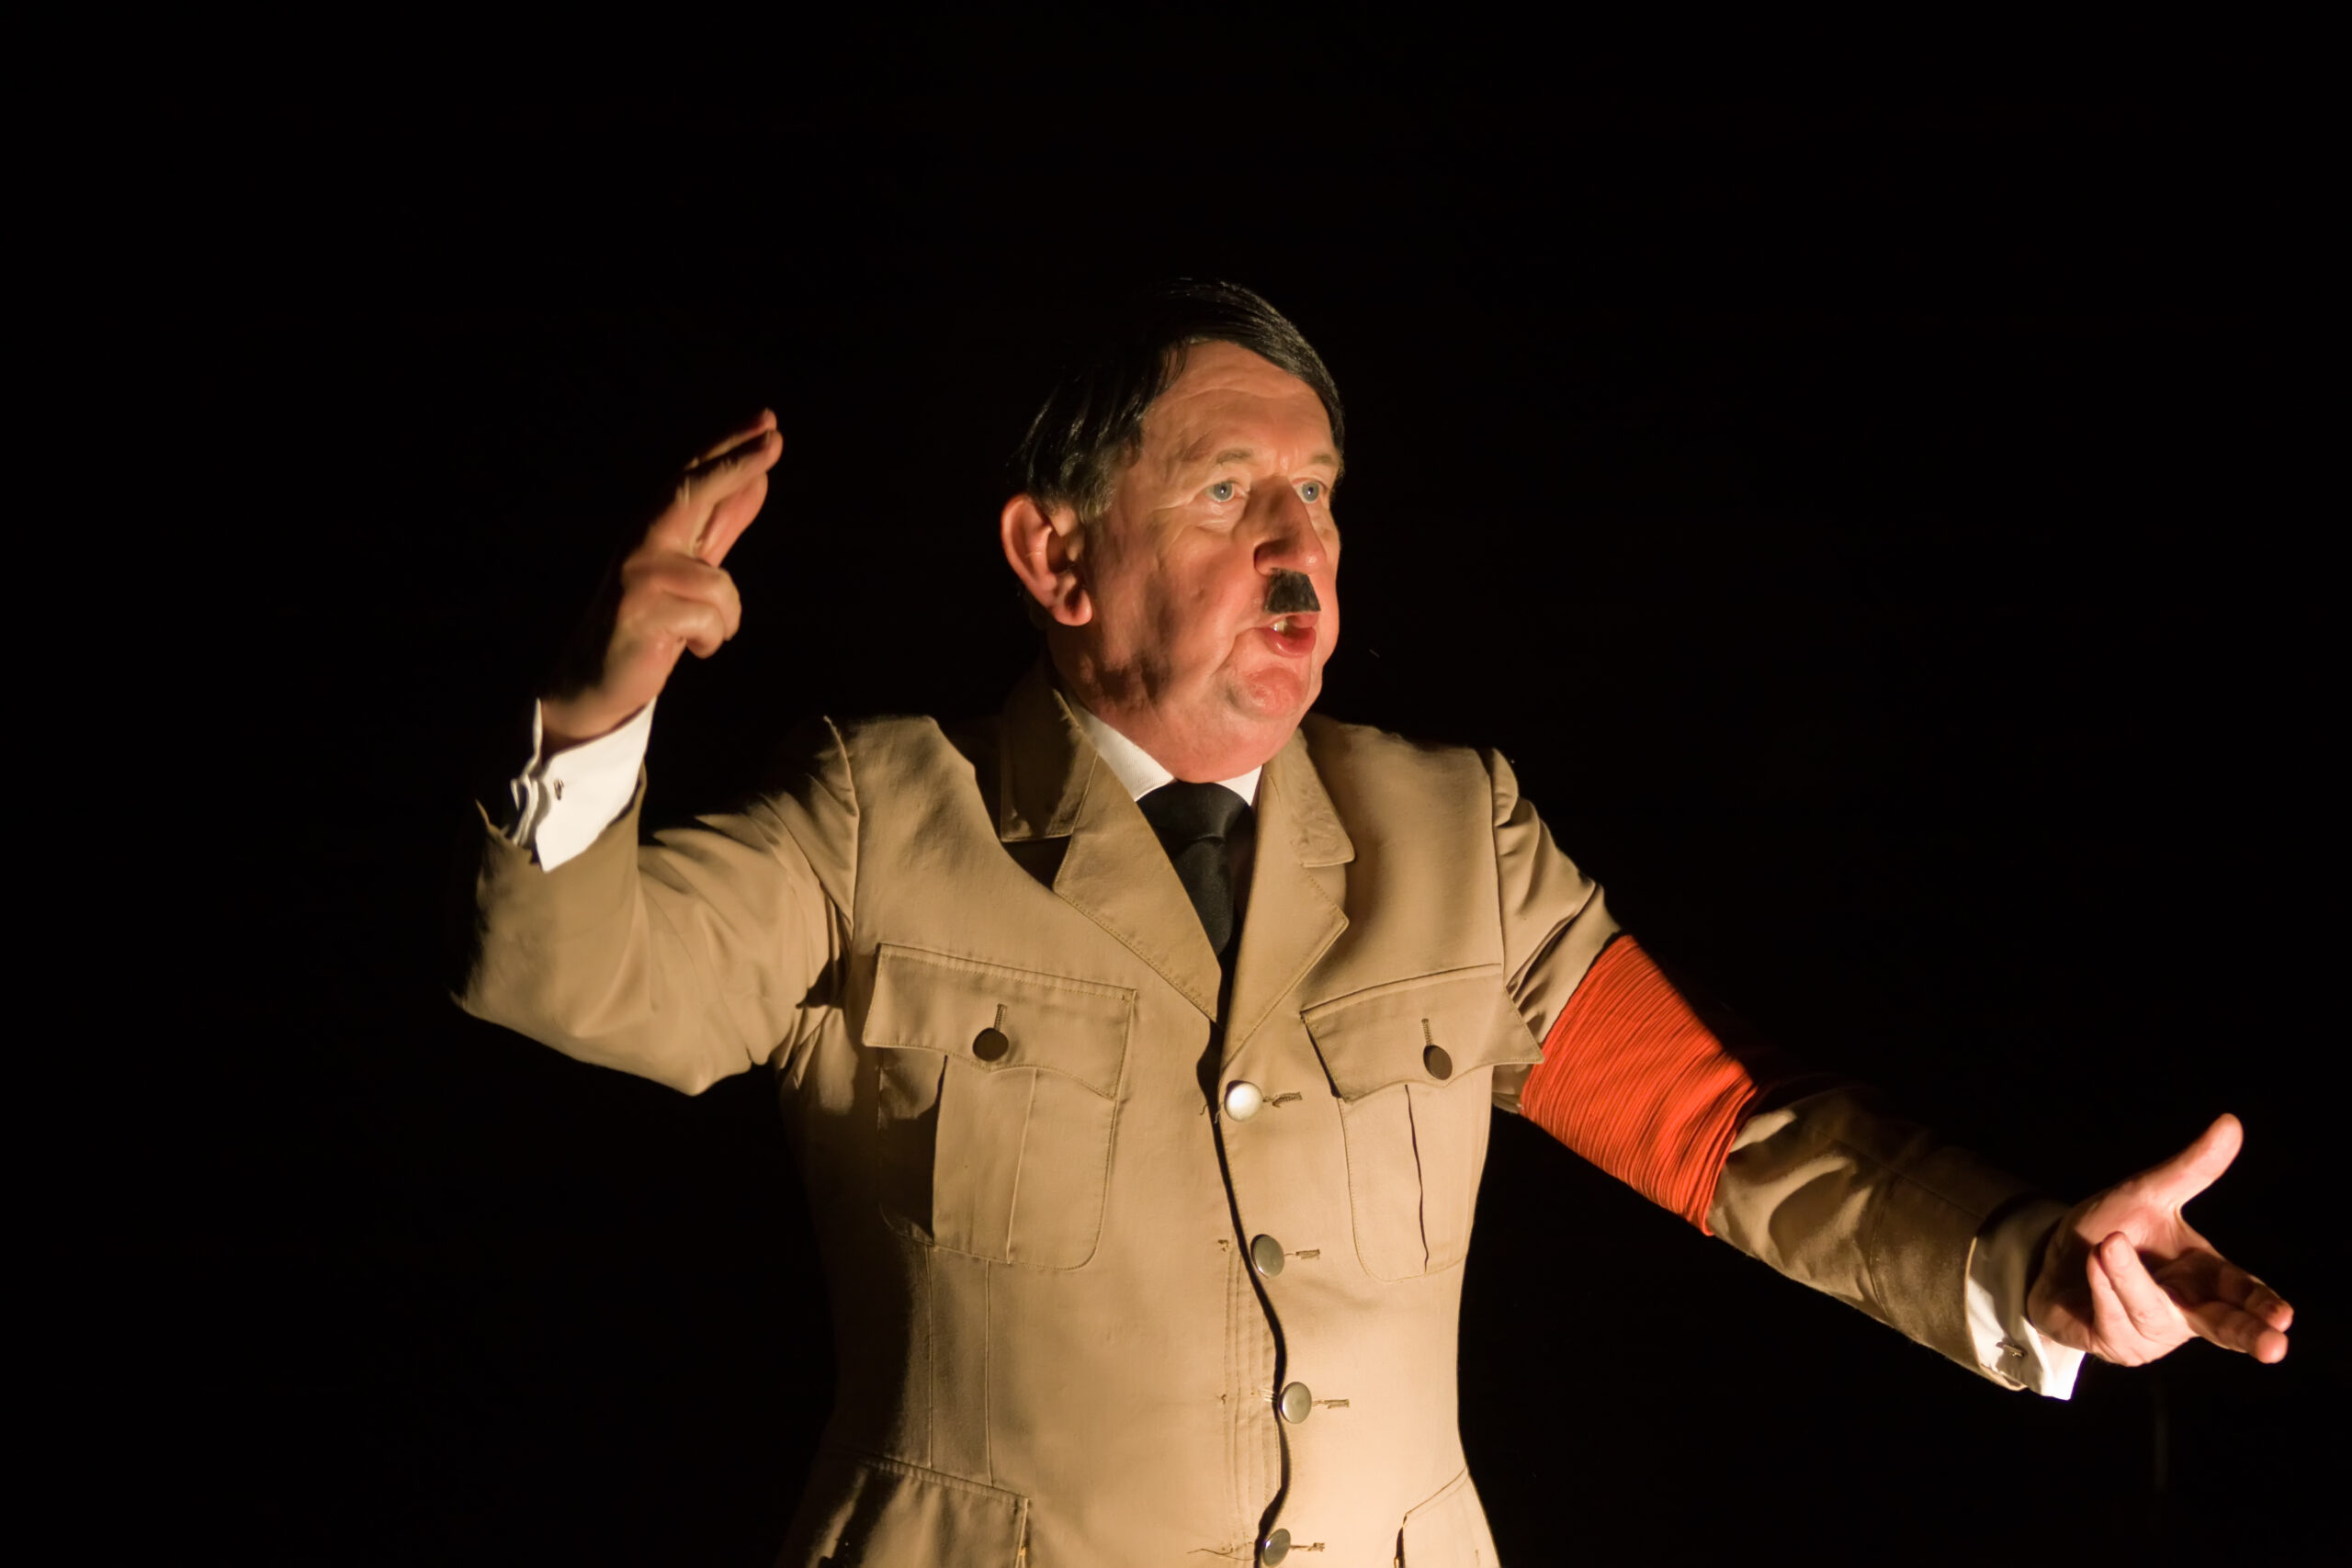 Skuespiller i Adolf Hitler-kostyme og sminke/bart holder tale med gestikulerende armer.